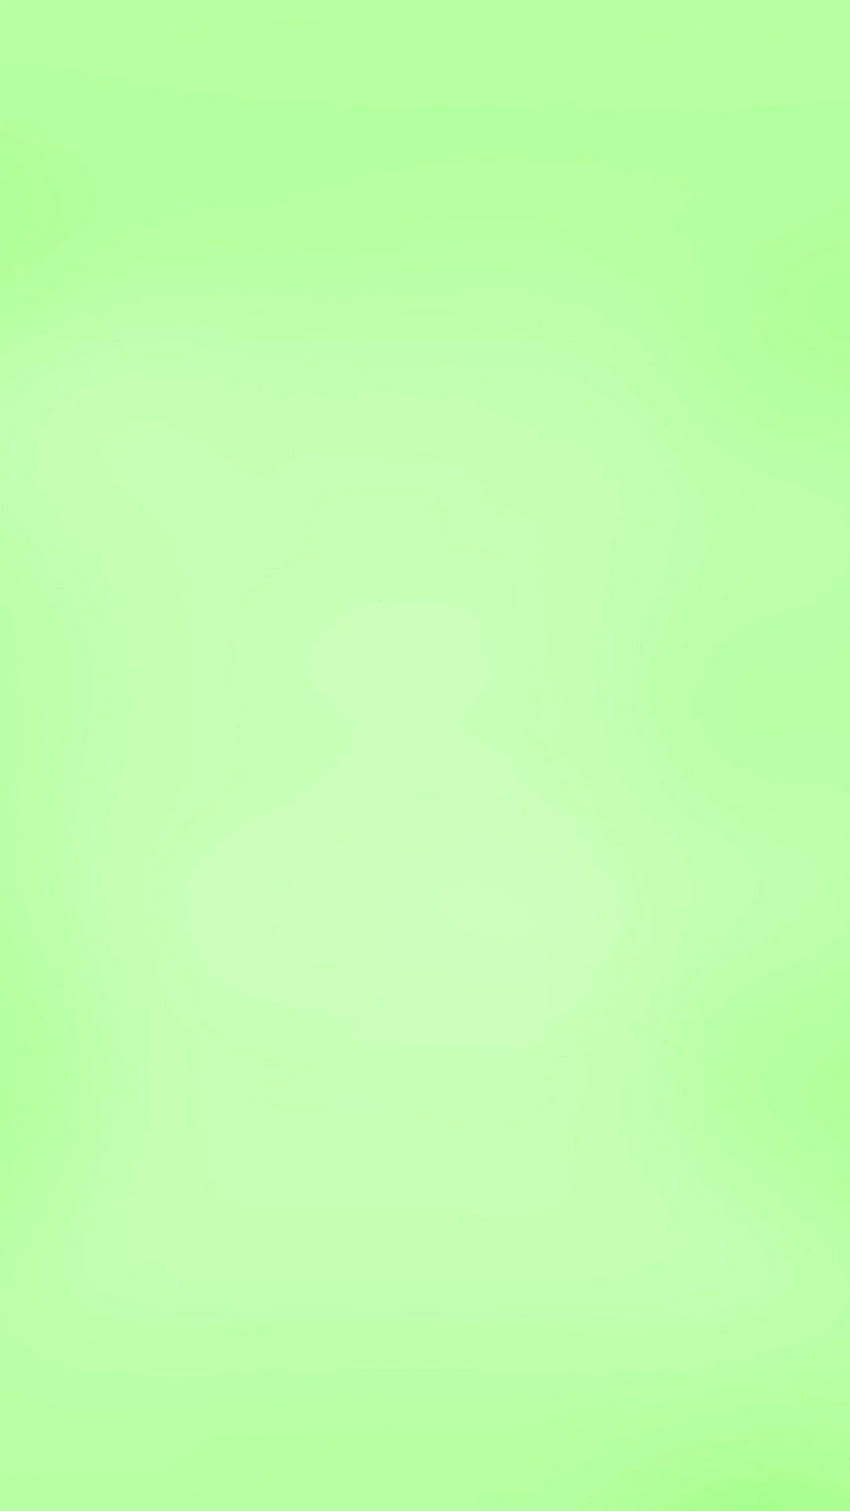 Plain light green HD wallpapers | Pxfuel